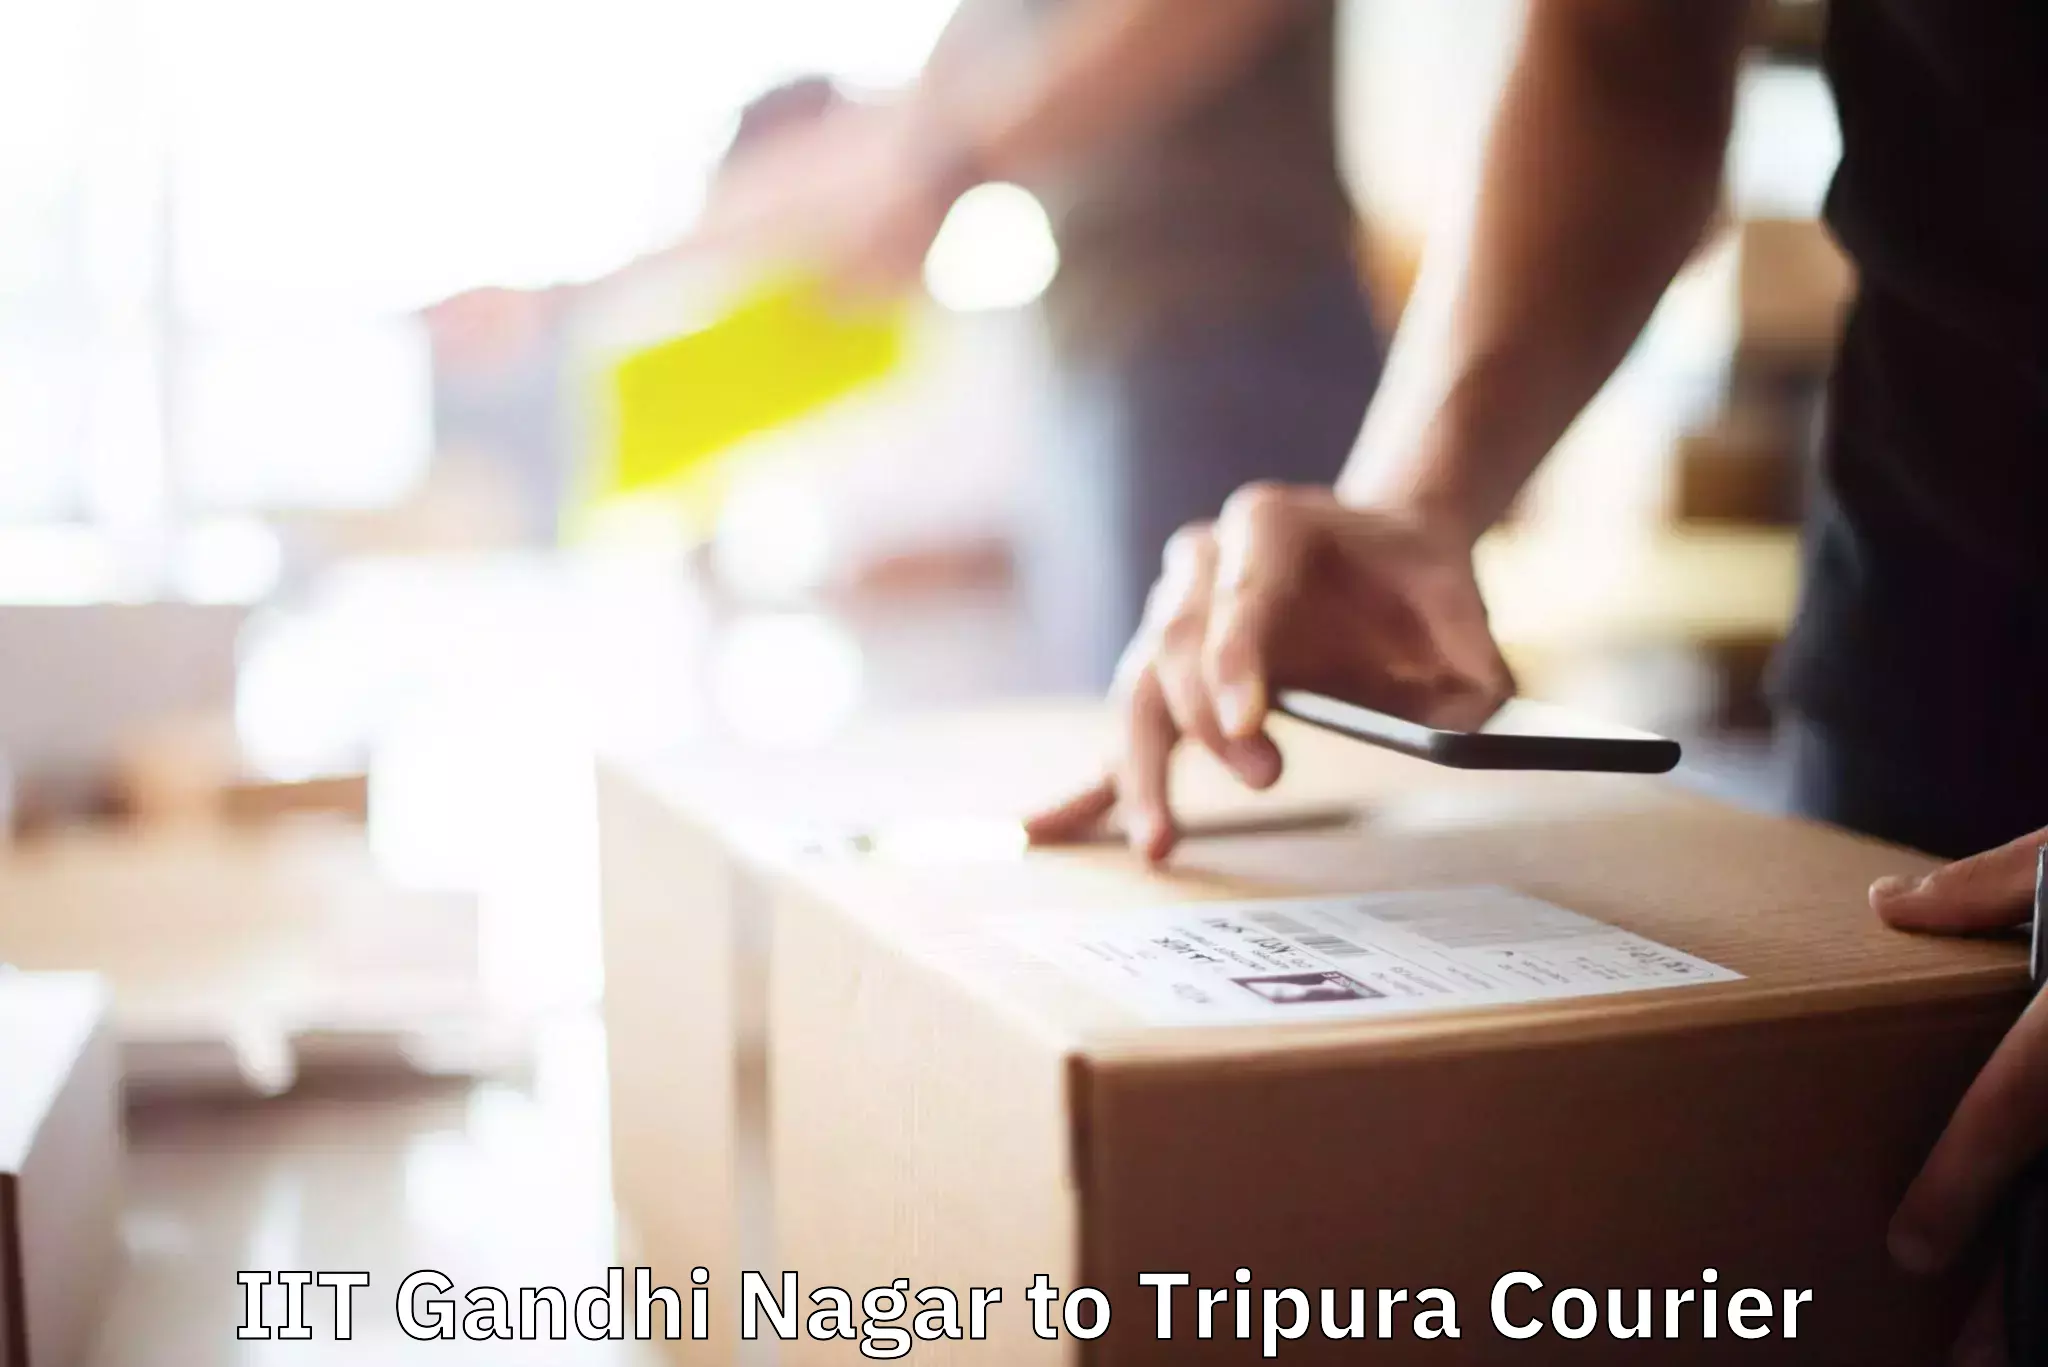 Customized furniture moving IIT Gandhi Nagar to Udaipur Tripura